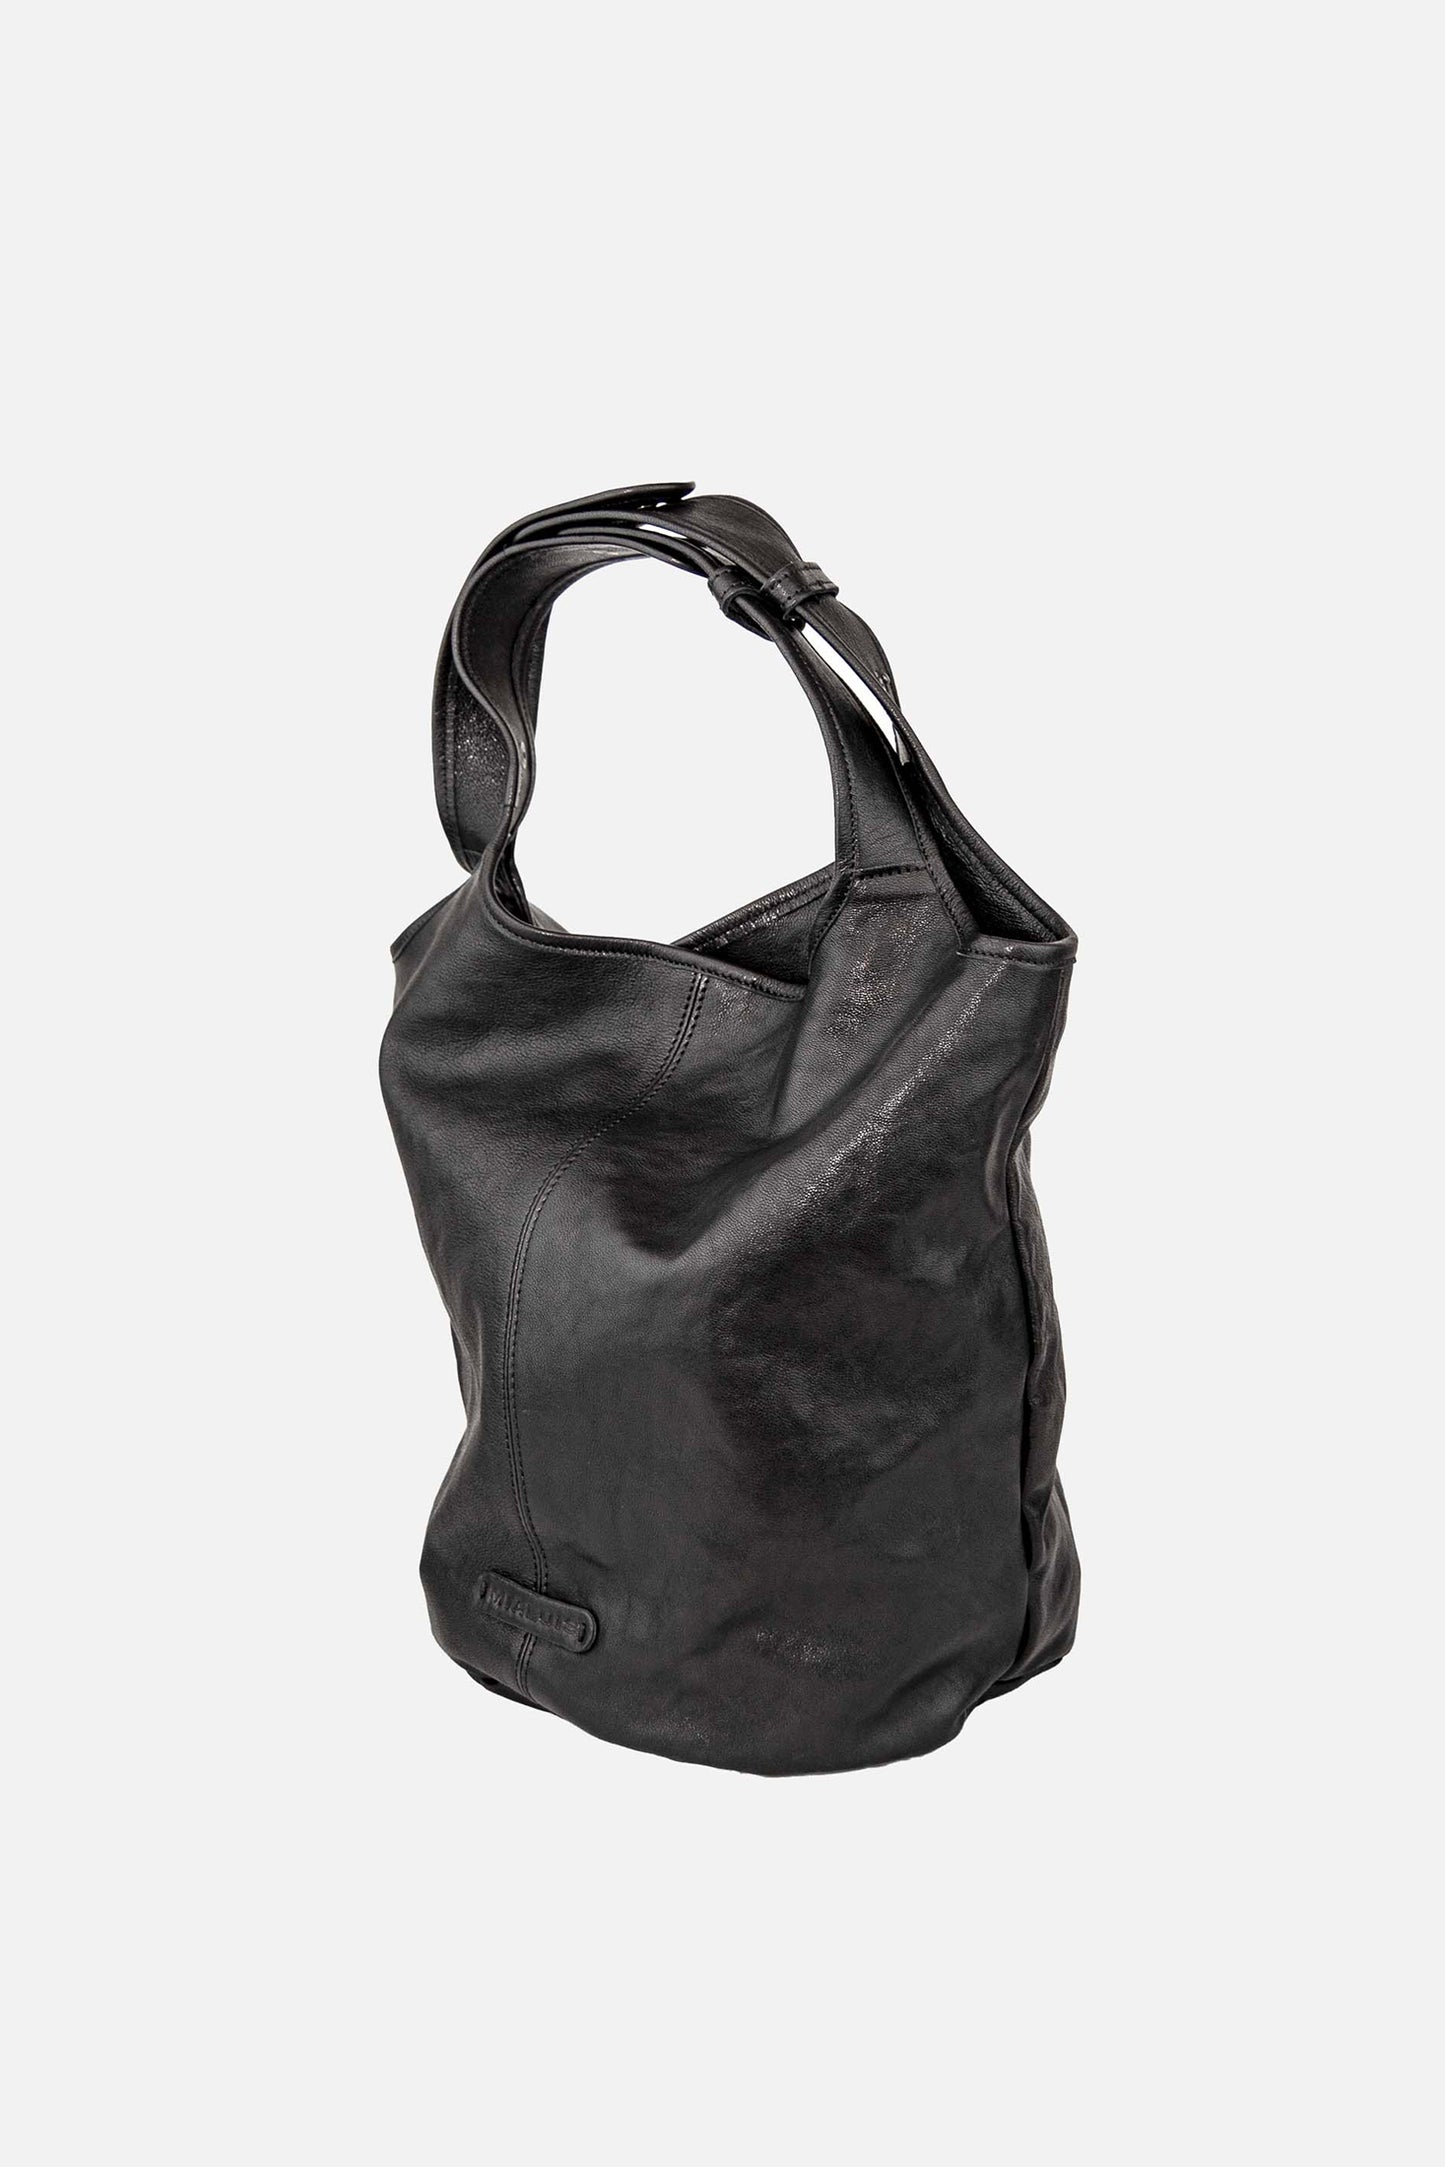 Lena tote bag in black nappa leather